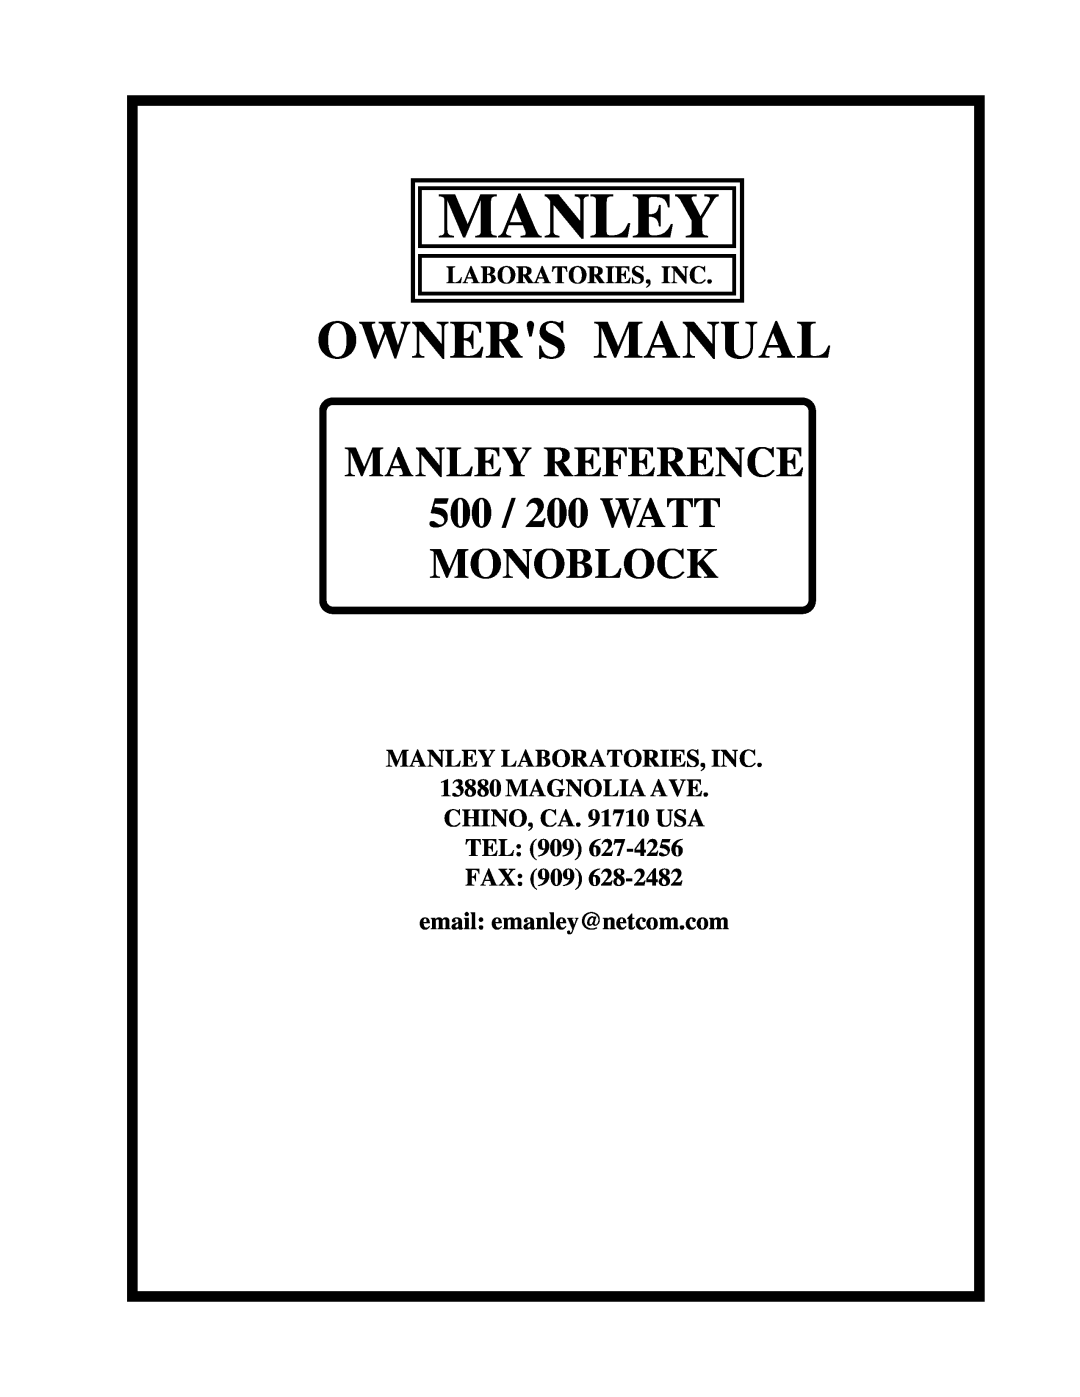 Manley Labs 500 / 200 WATT MONOBLOCK AMPLIFIER owner manual Manley, MANLEY REFERENCE 500 / 200 WATT MONOBLOCK 